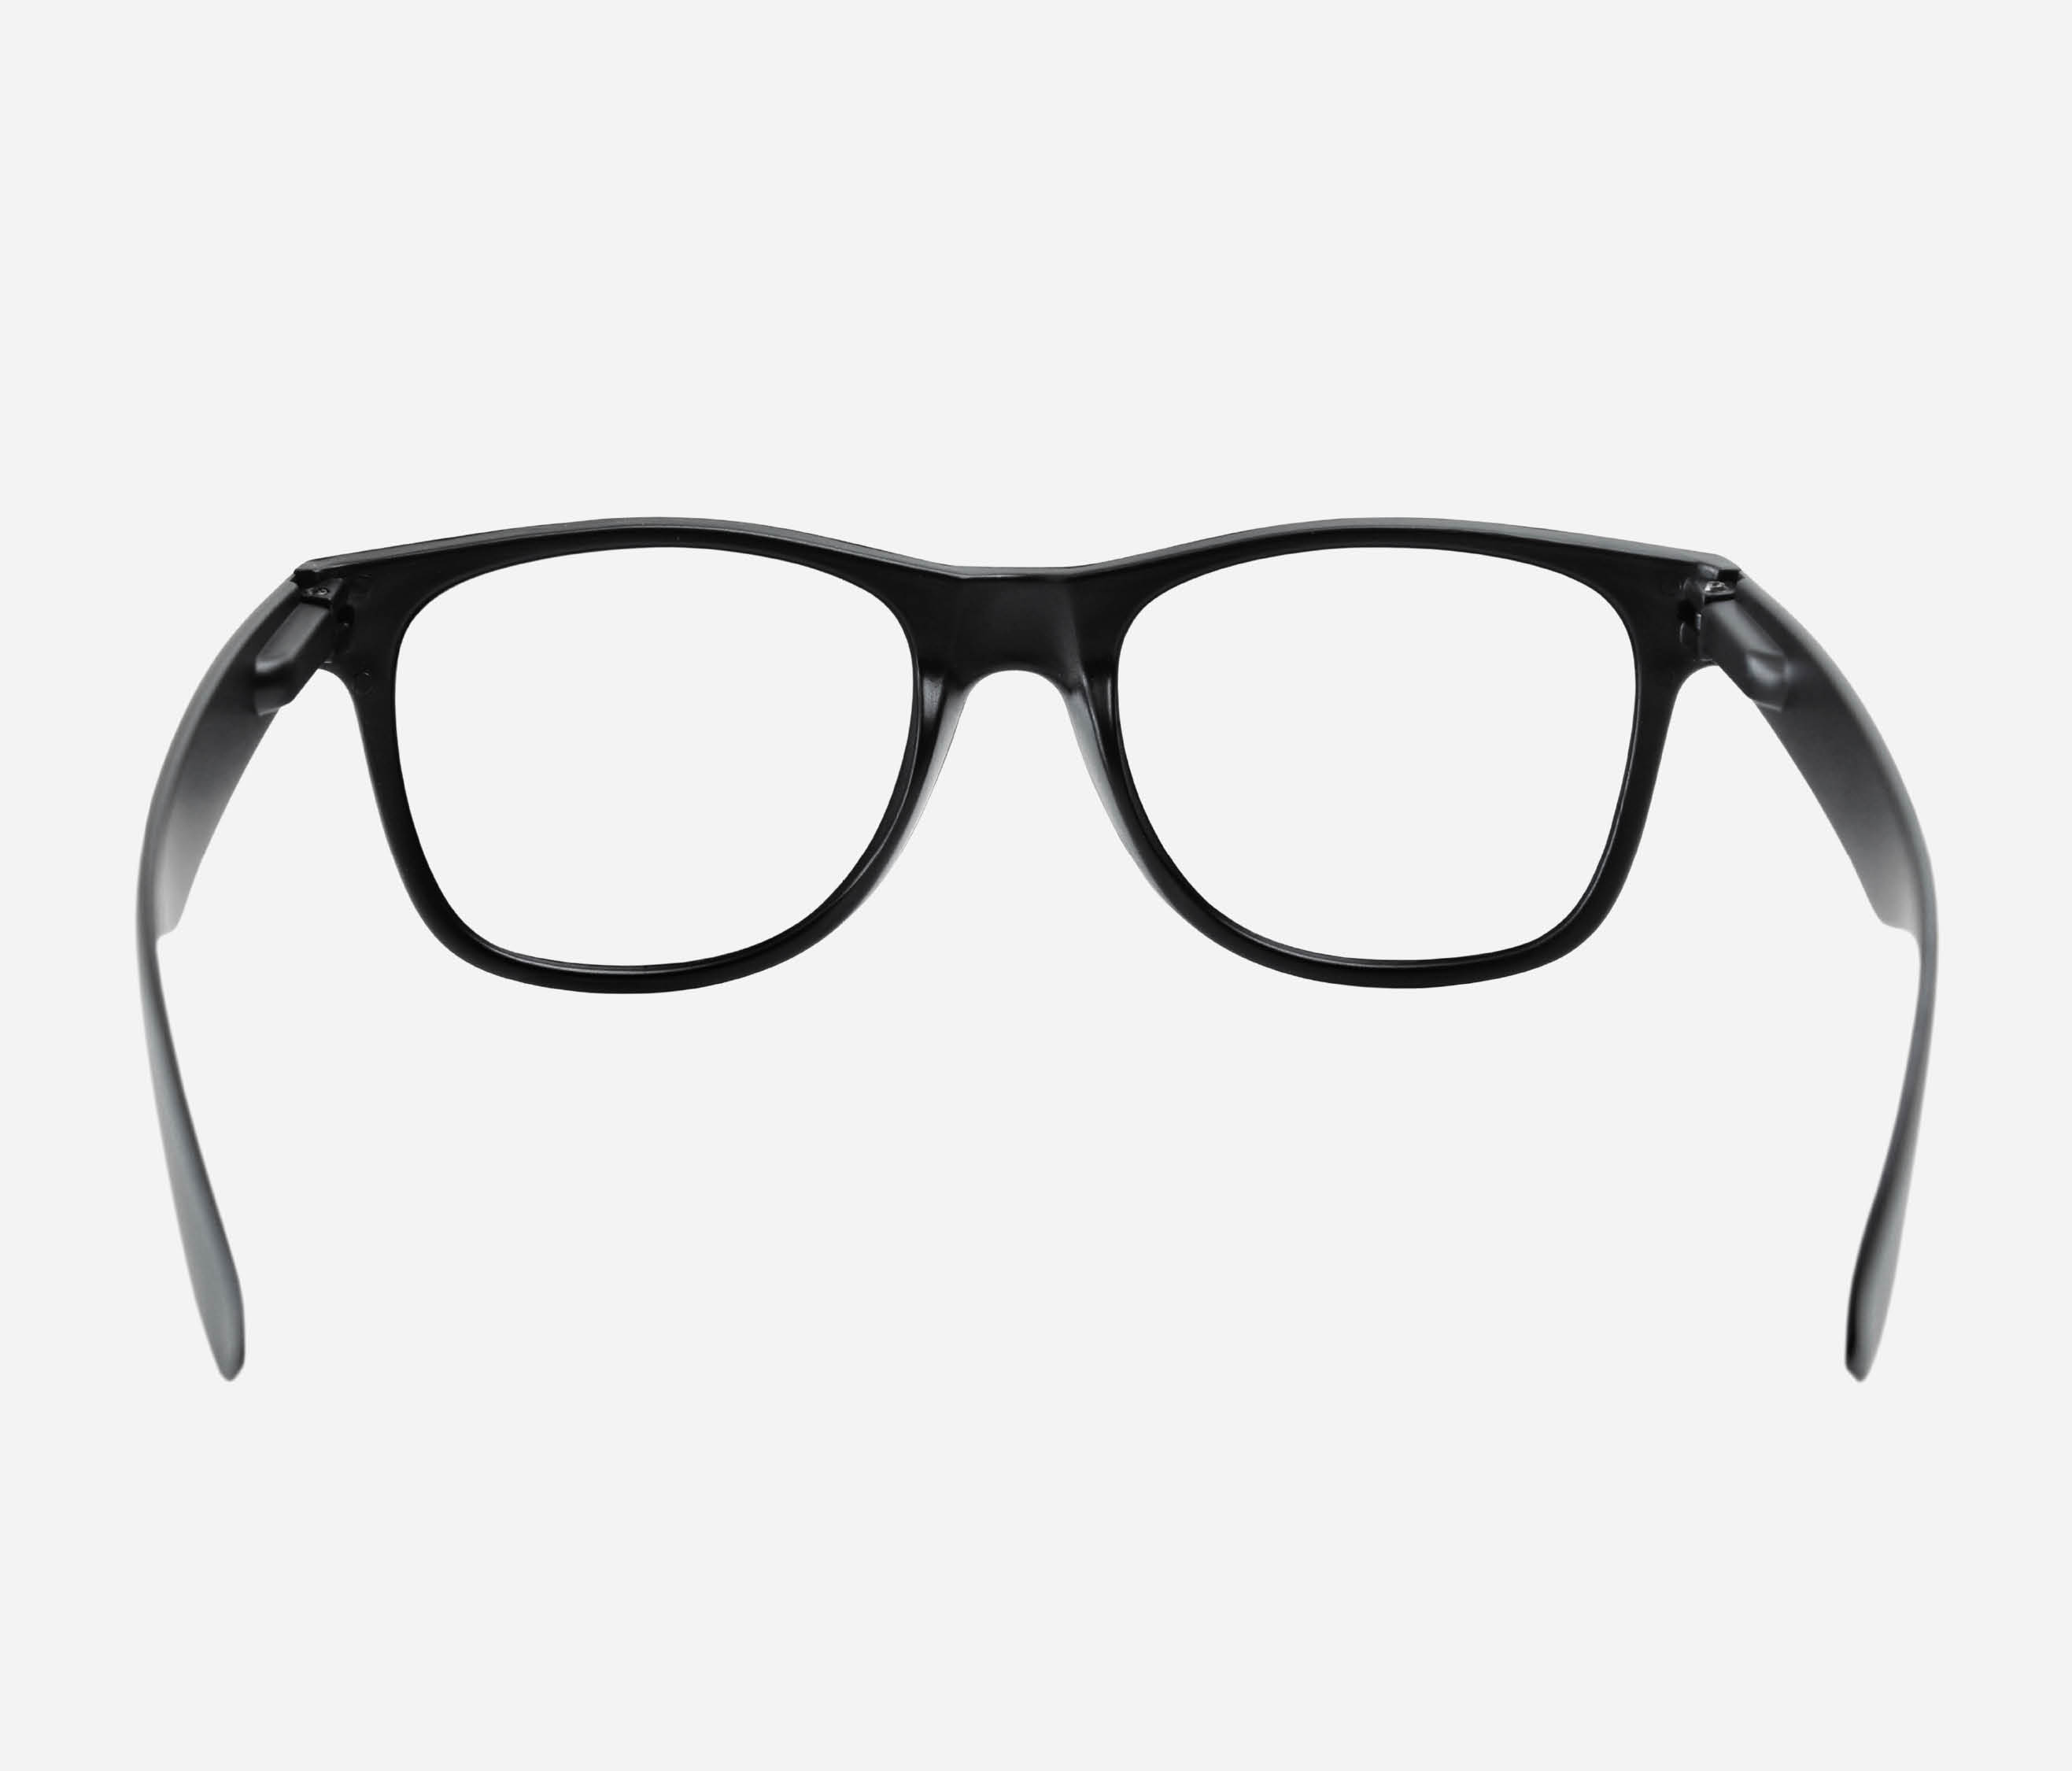 pair of black rimmed glasses